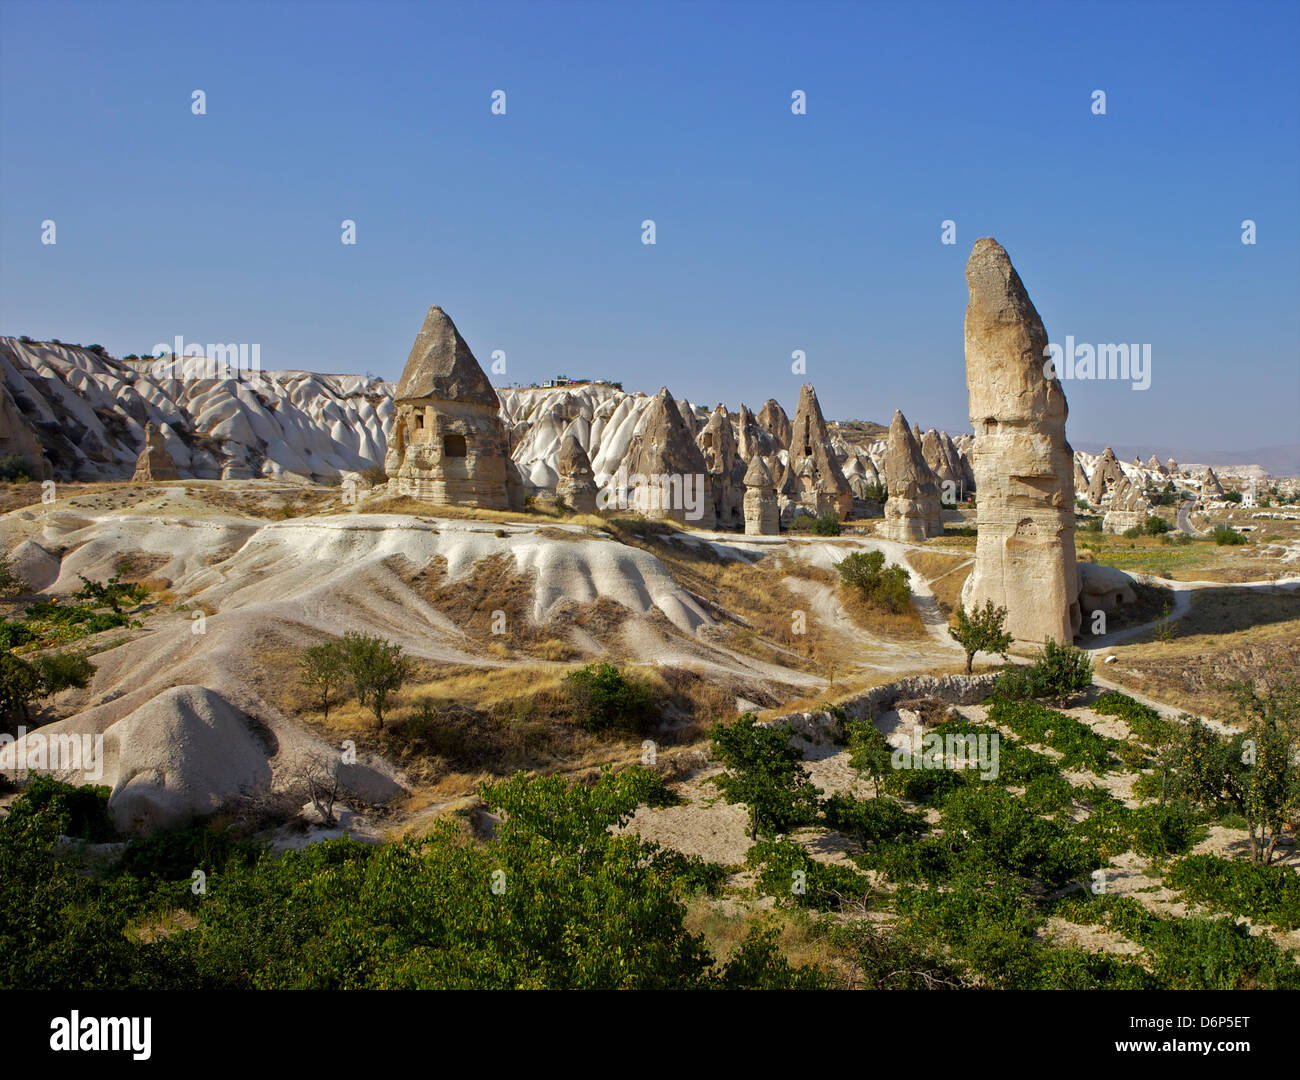 Camini di Fata rock formazione paesaggio nei pressi di Goreme, Cappadocia, Anatolia, Turchia, Asia Minore, Eurasia Foto Stock